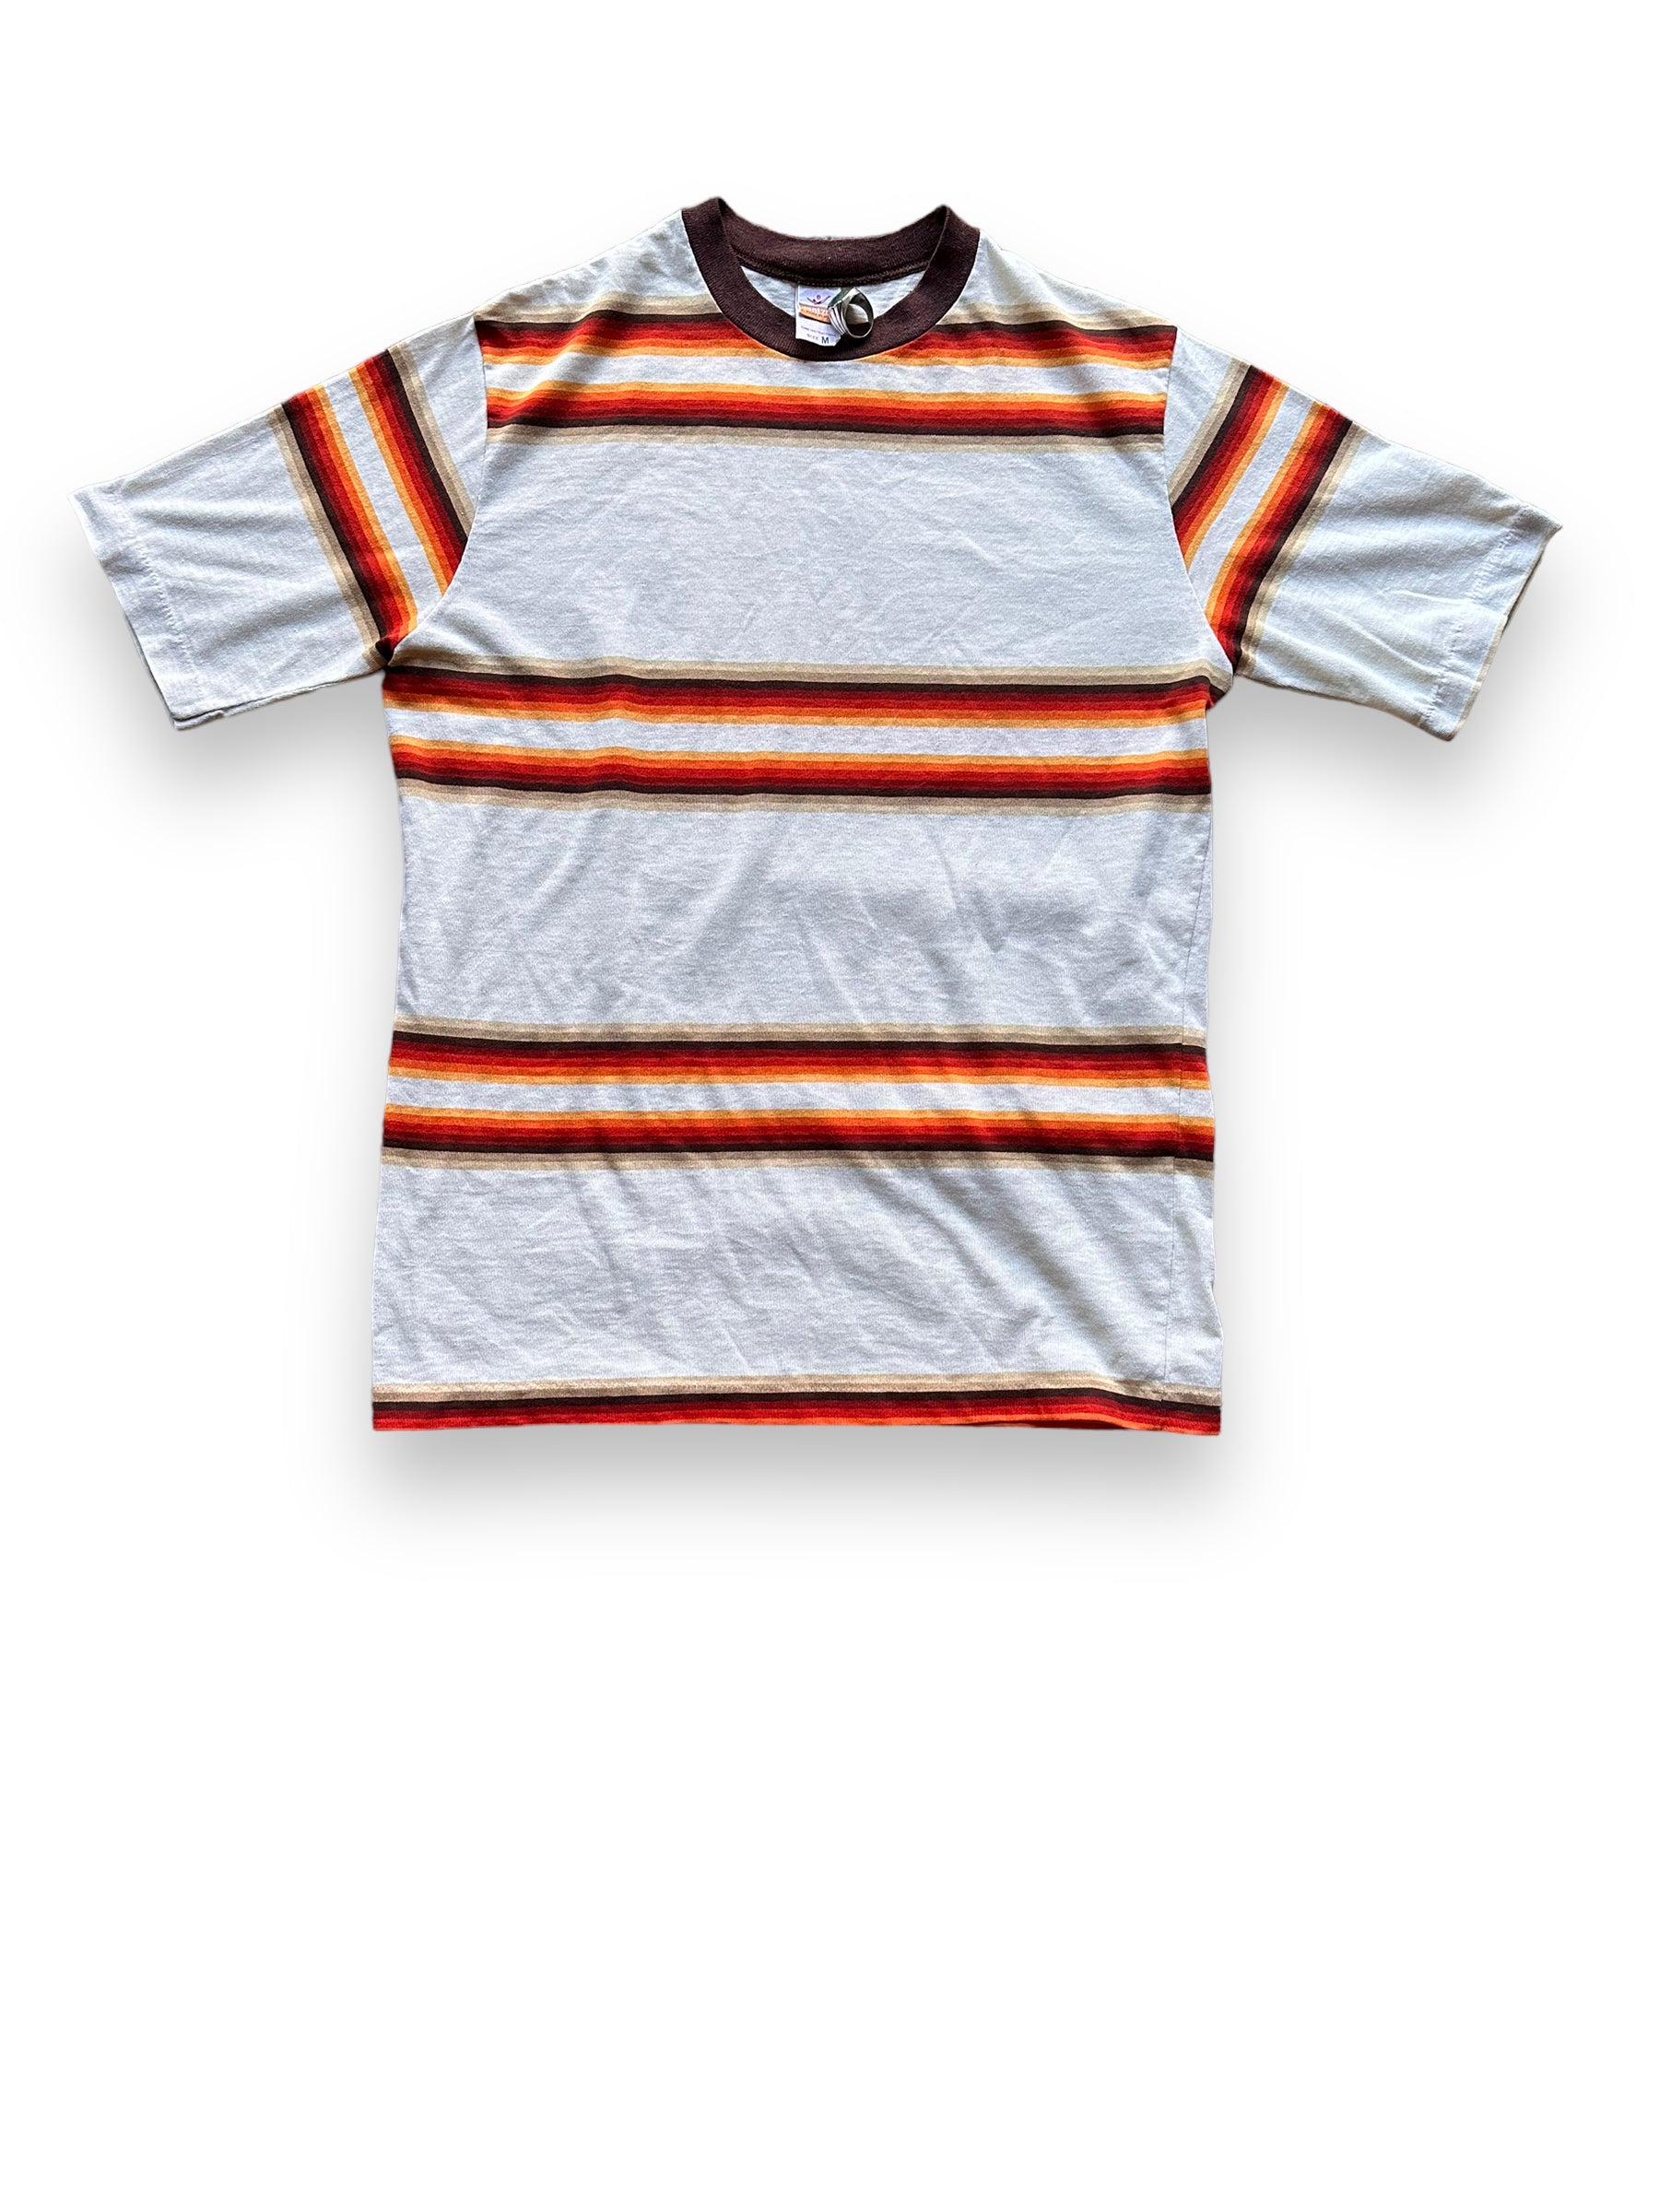 Front View of Vintage Jantzen Striped Shirt SZ M | Vintage Striped Shirt Seattle | Barn Owl Vintage Seattle